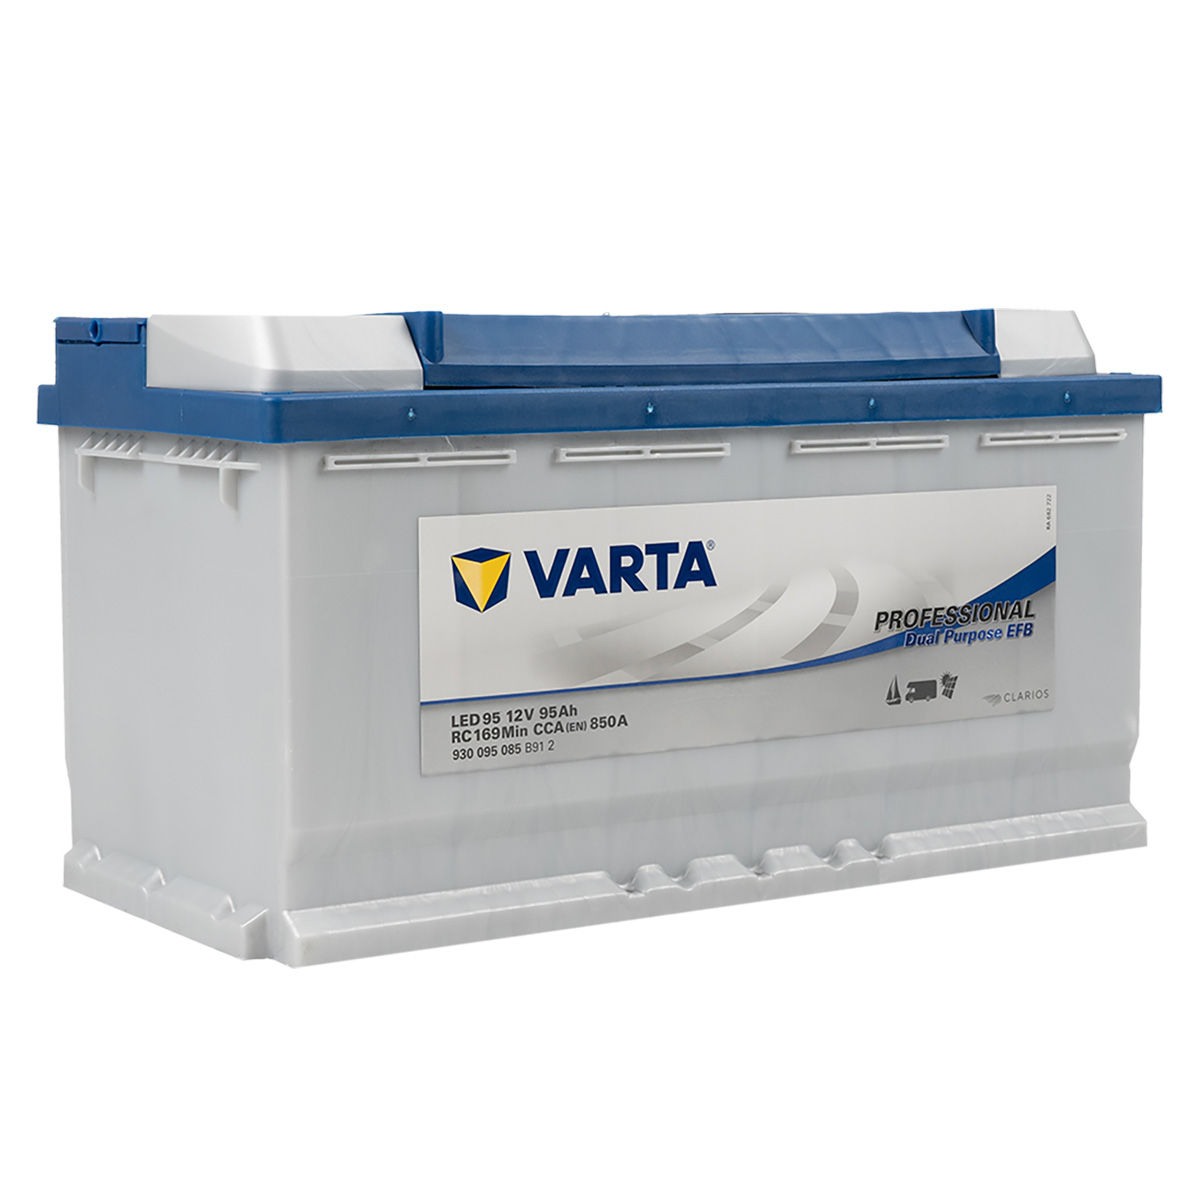 Varta LED95 Professional EFB 12V 95Ah 850A Versorgungsbatterie